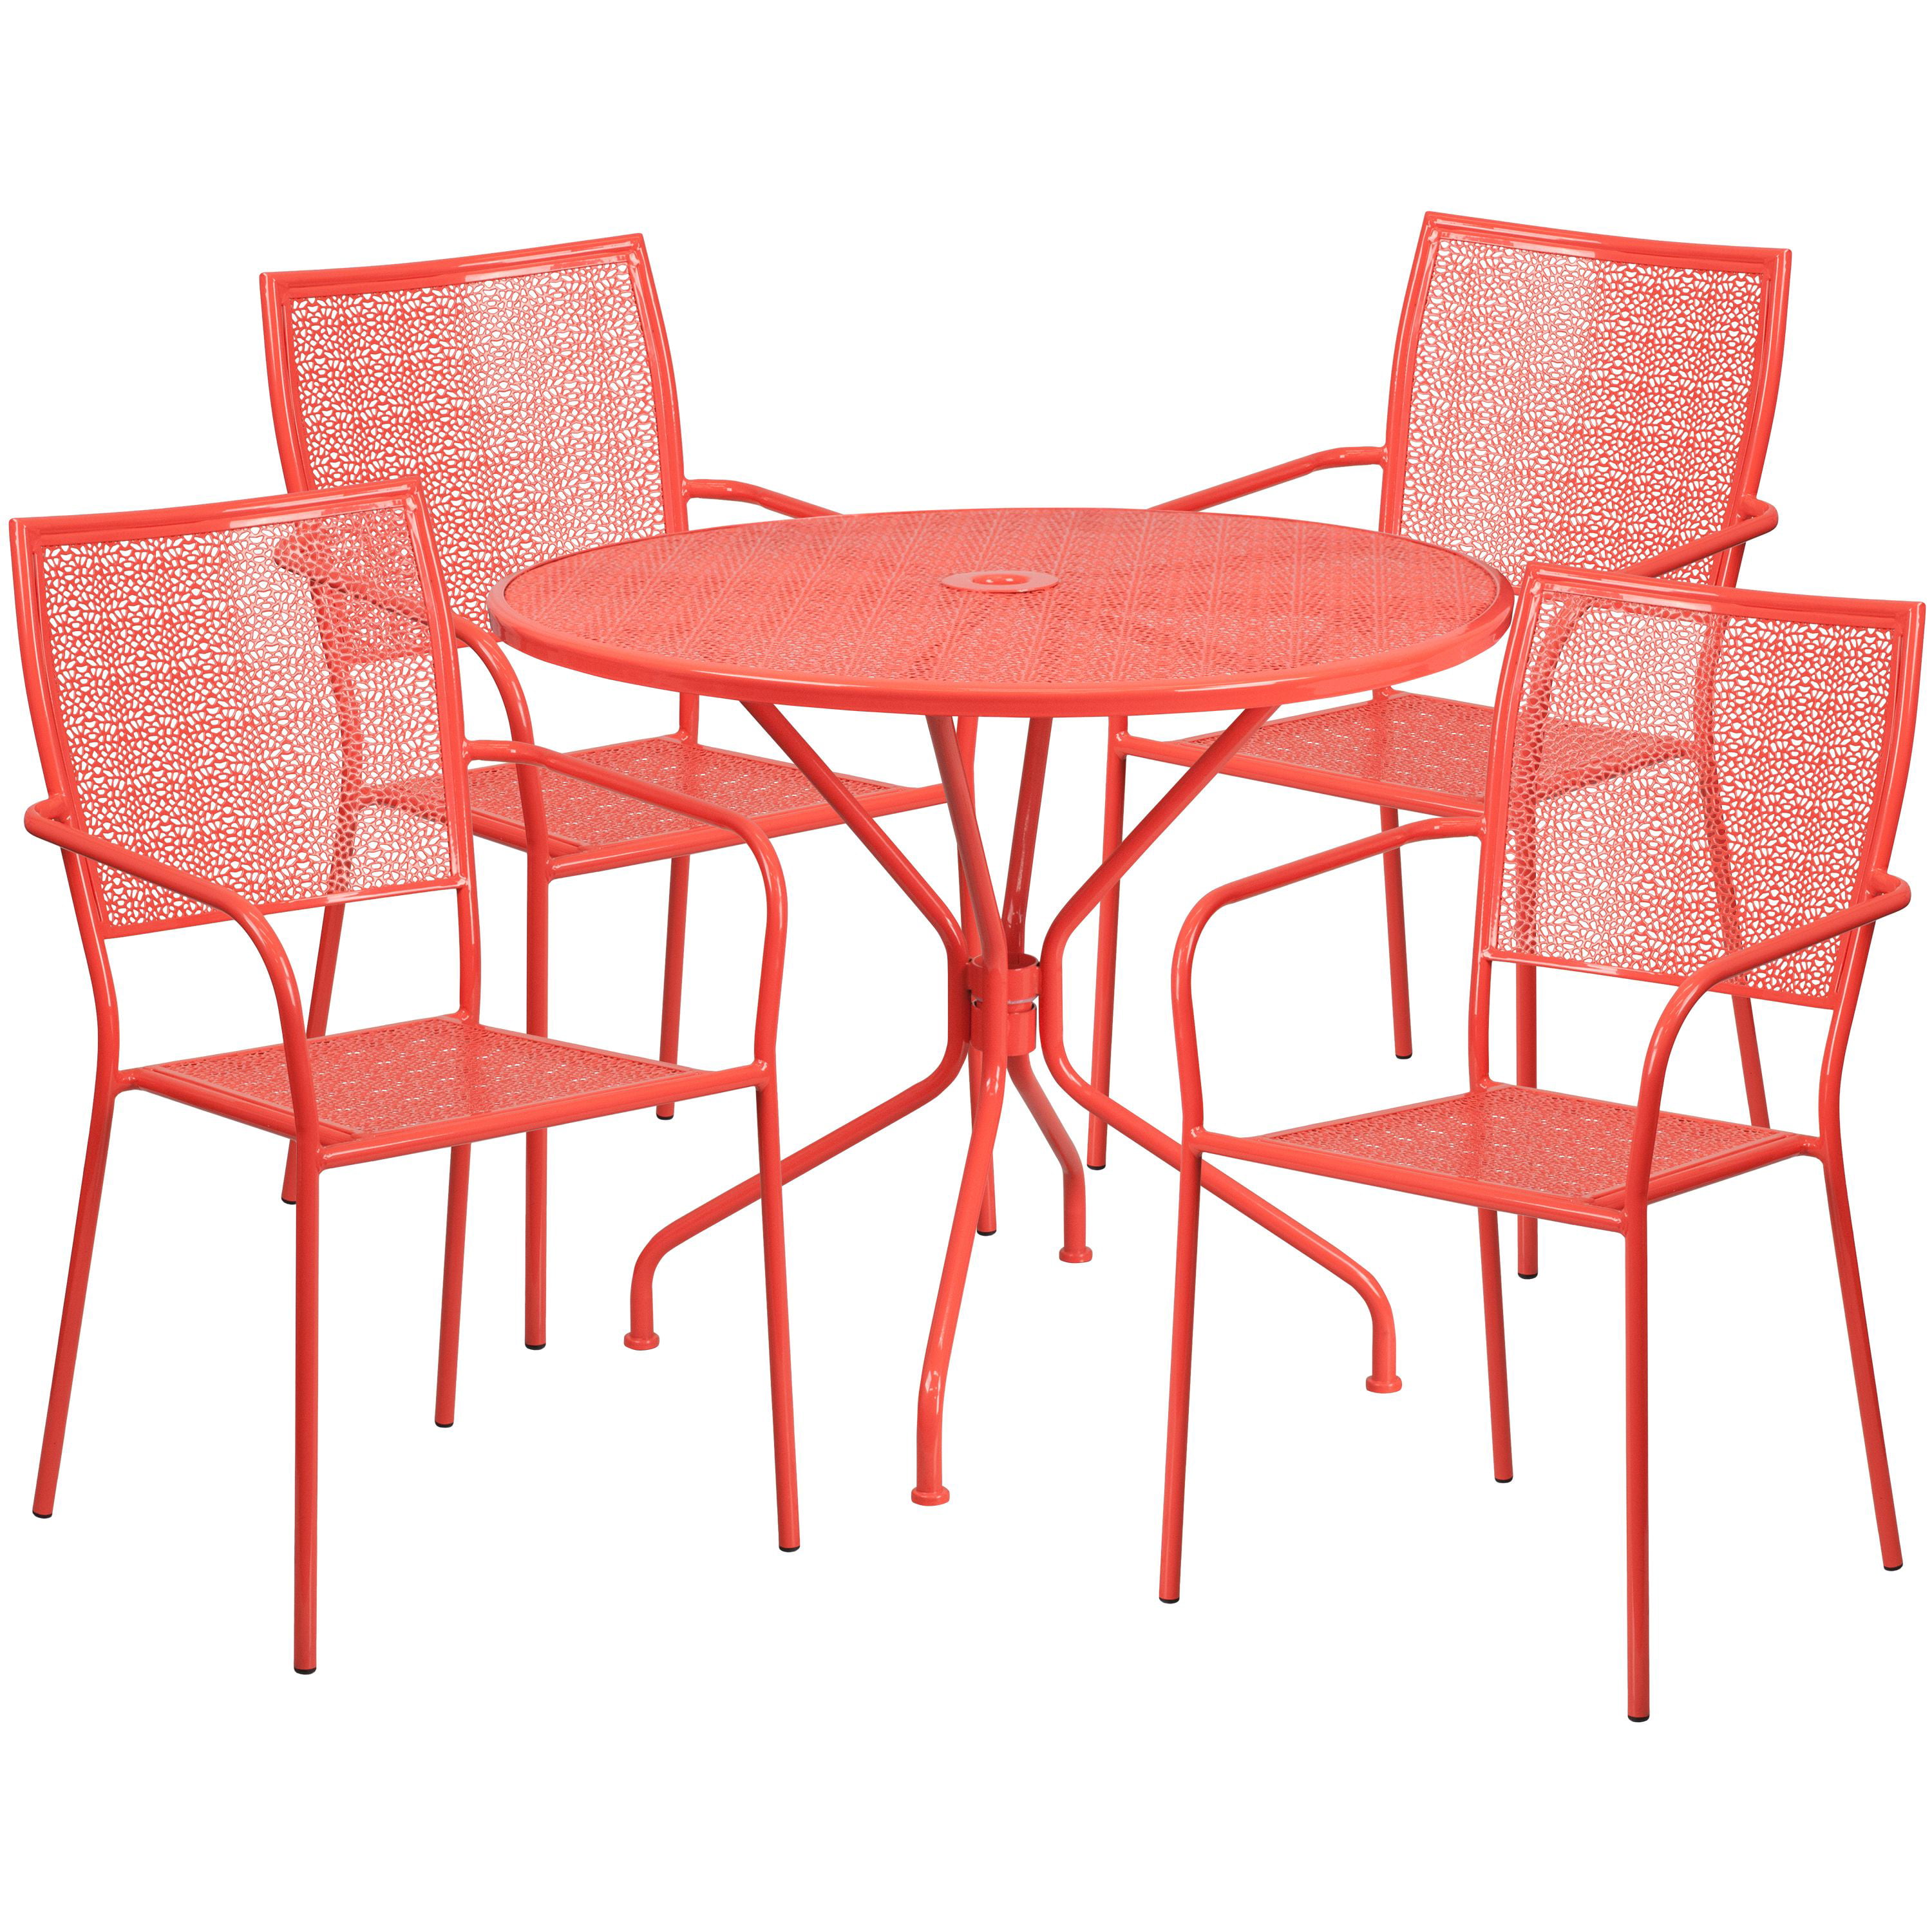 35.25/'/' Round Indoor-Outdoor Restaurant Patio Table in Coral Steel Metal